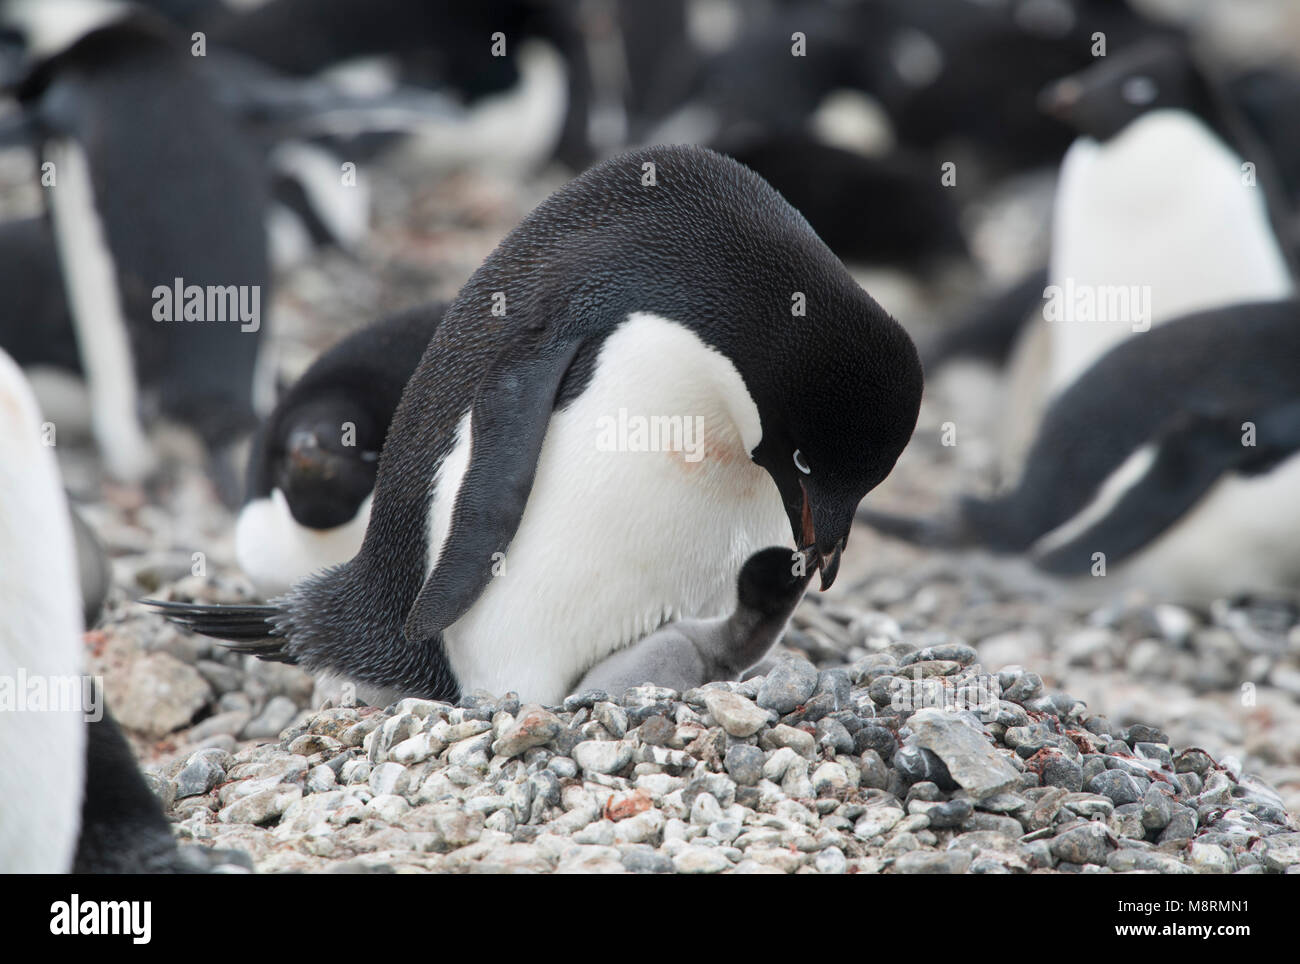 Un pinguino Adelie alimenta la sua penguin chick presso la colonia di pinguini su Brown Bluff, Antartide. Foto Stock